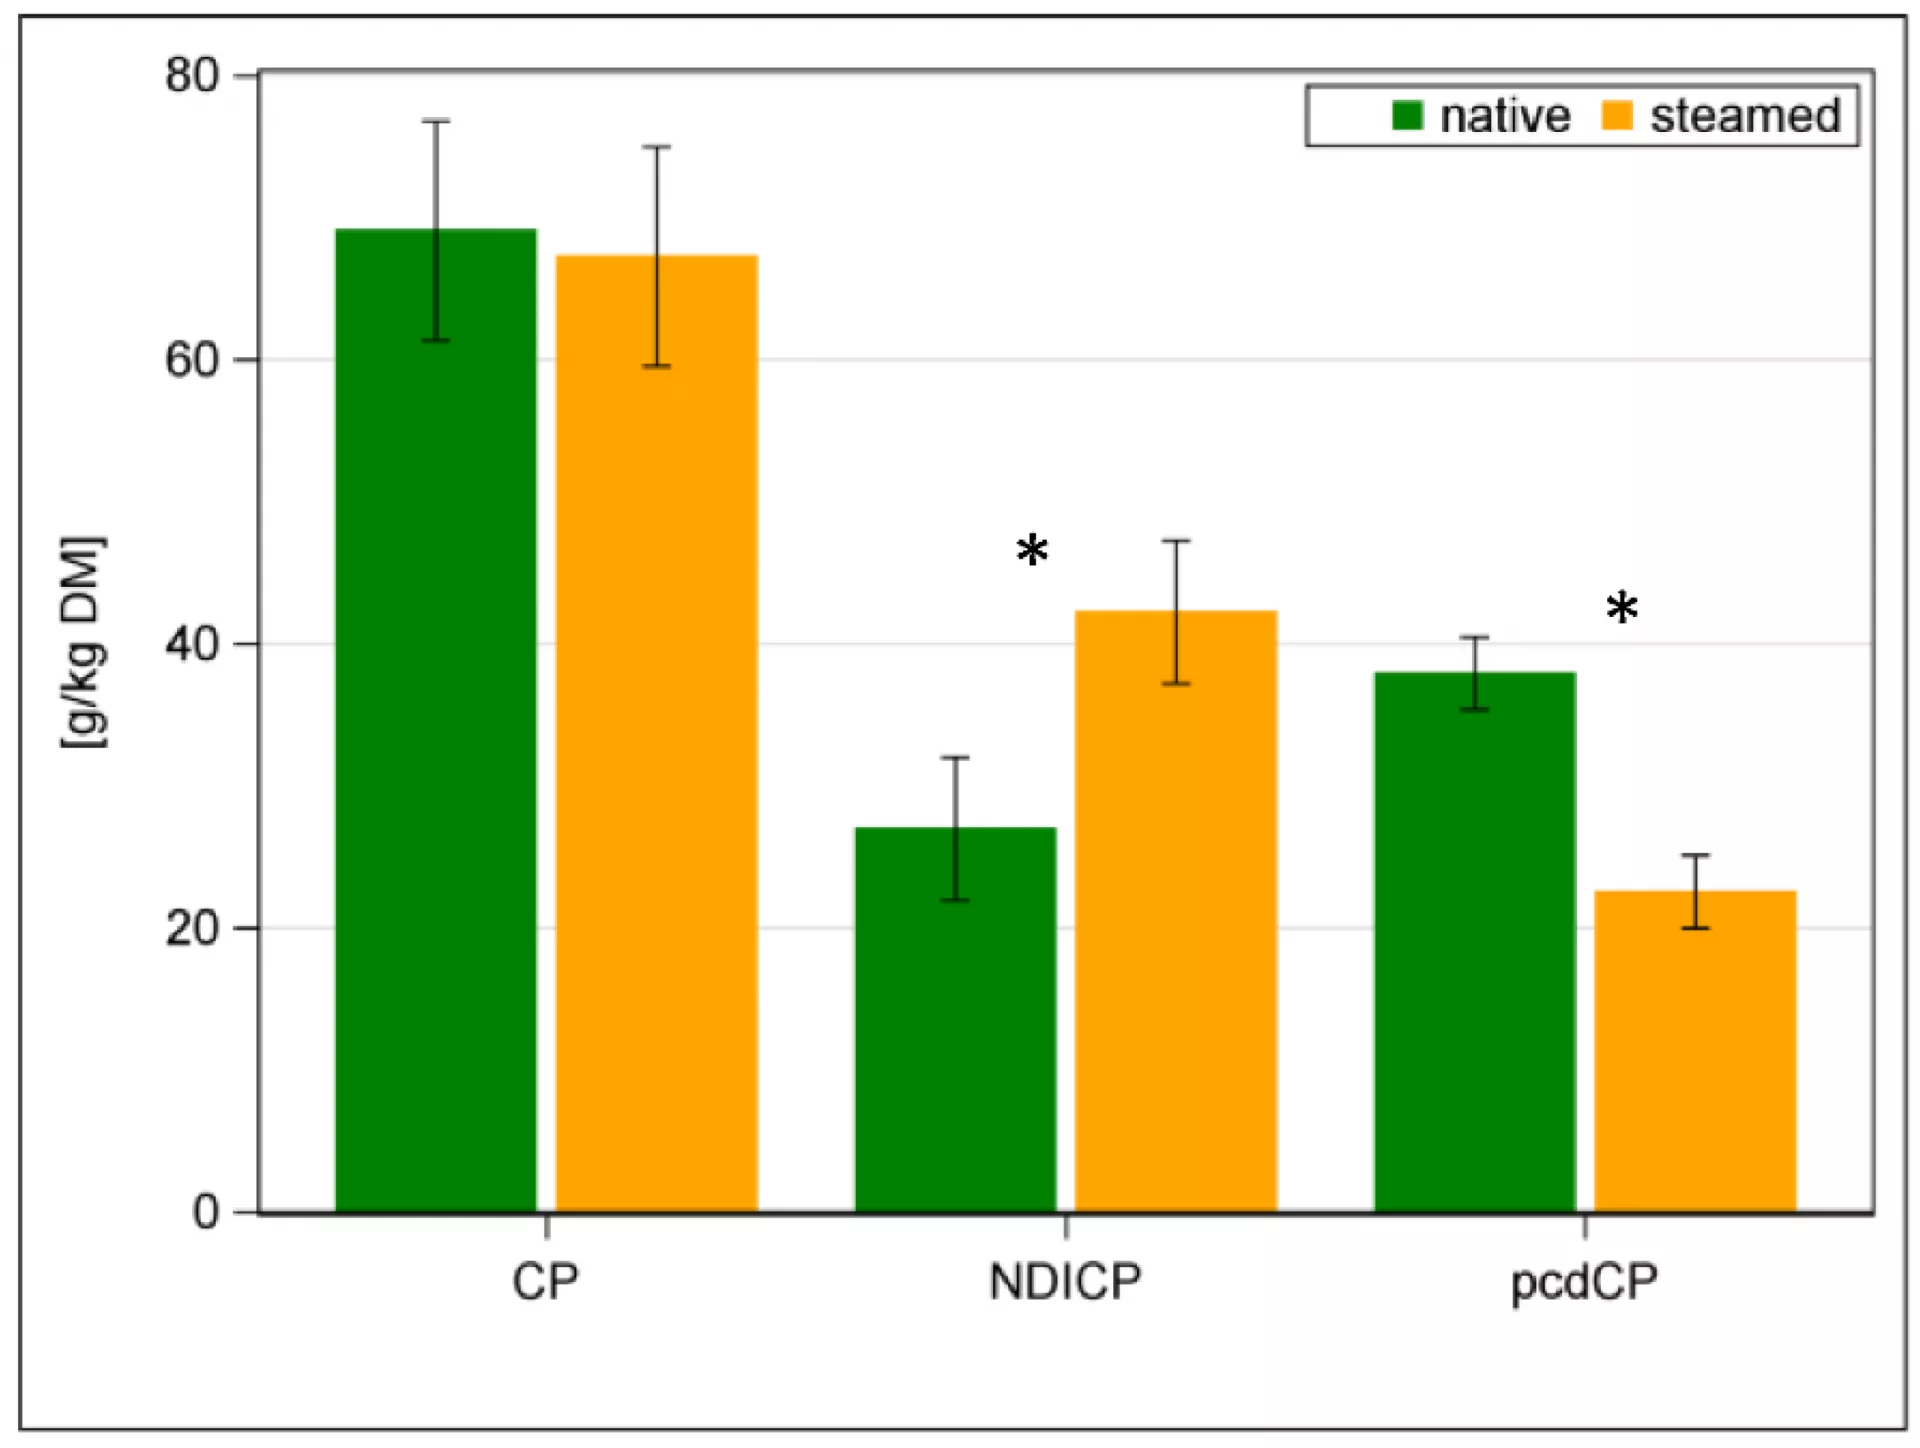 Obsah hrubého proteinu (CP), neutrálního detergentu nerozpustného CP (NDICP) a precékálního stravitelného CP (pcdCP) v nativním (zelené sloupce) a napařeném seně (oranžové sloupce)